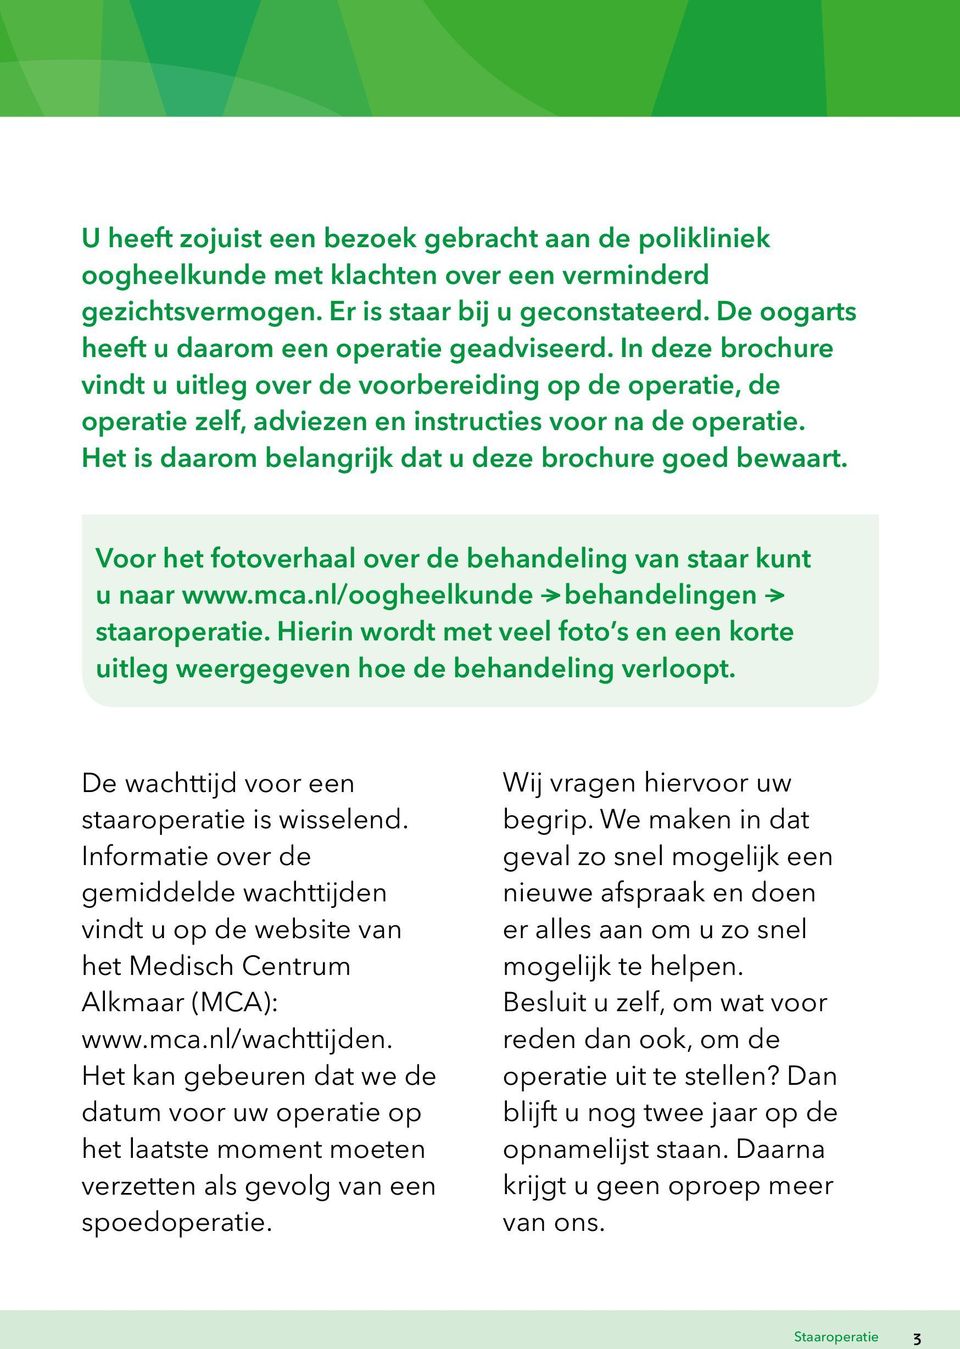 Het is daarom belangrijk dat u deze brochure goed bewaart. Voor het fotoverhaal over de behandeling van staar kunt u naar www.mca.nl/oogheelkunde > behandelingen > staaroperatie.